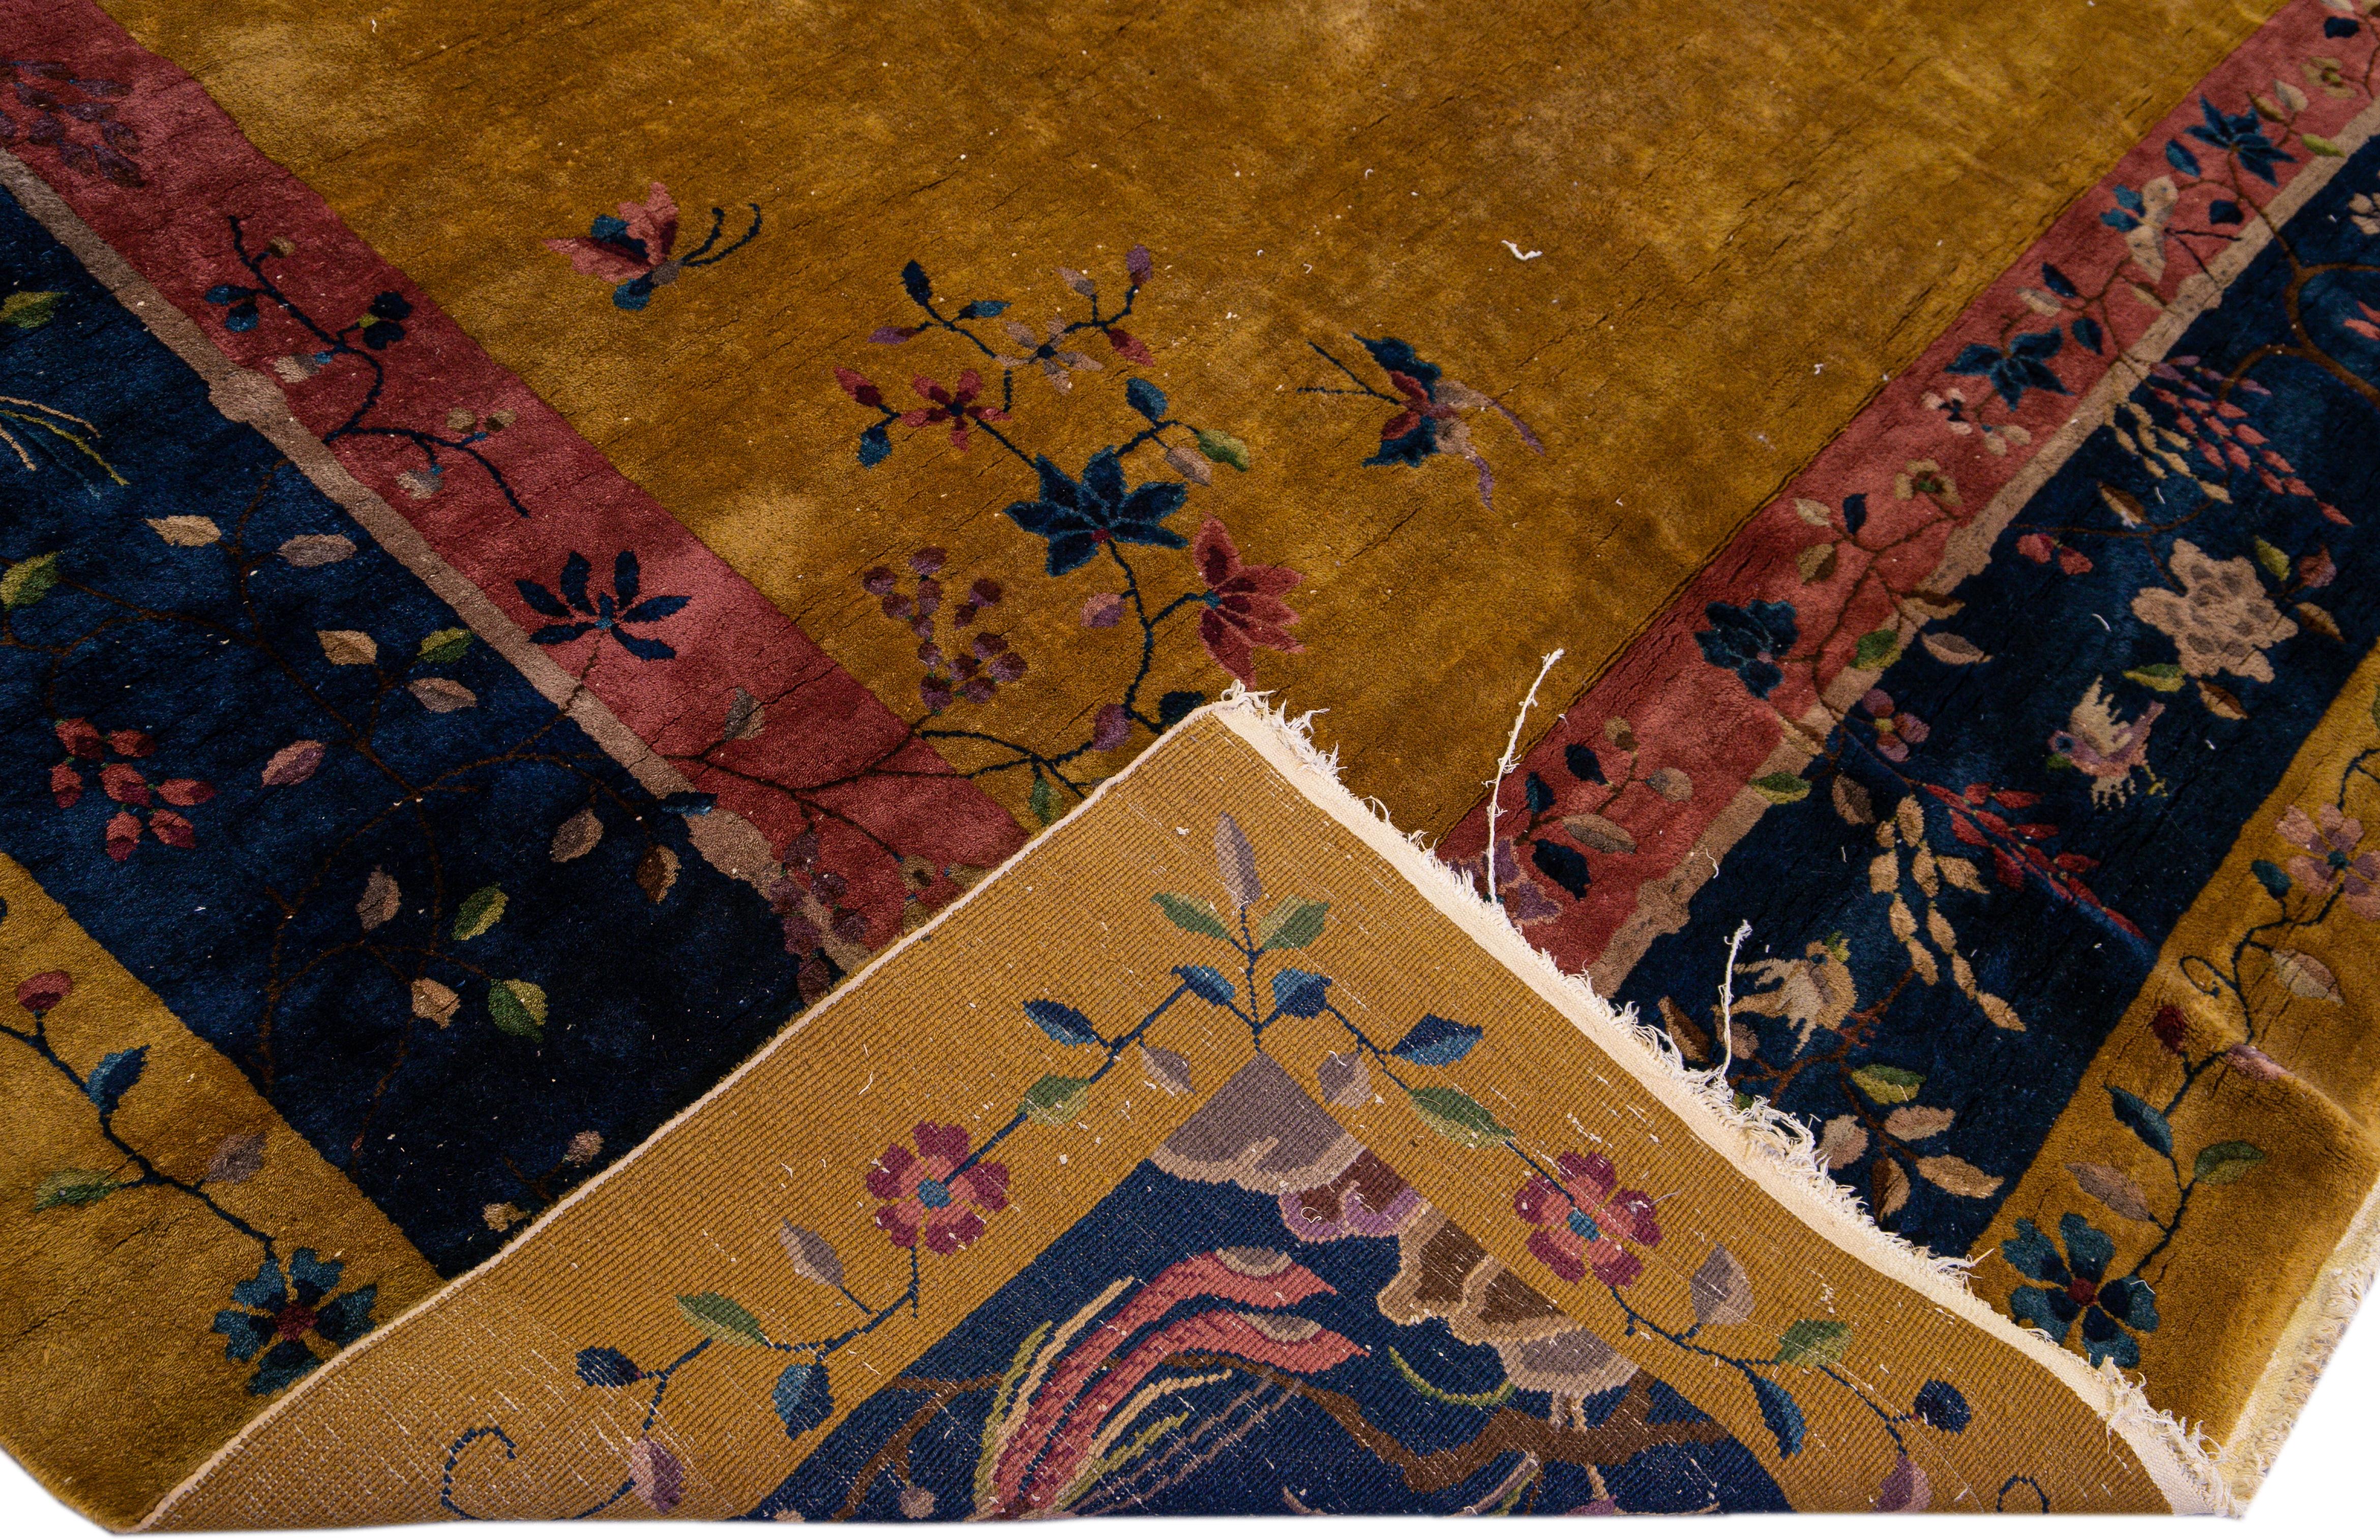 Schöner antiker chinesischer Art-Deco-Teppich aus handgeknüpfter Wolle mit einem Feld aus Goldrute. Dieser chinesische Teppich hat einen marineblauen und roten Rahmen mit mehrfarbigen Akzenten in einem prächtigen traditionellen chinesischen